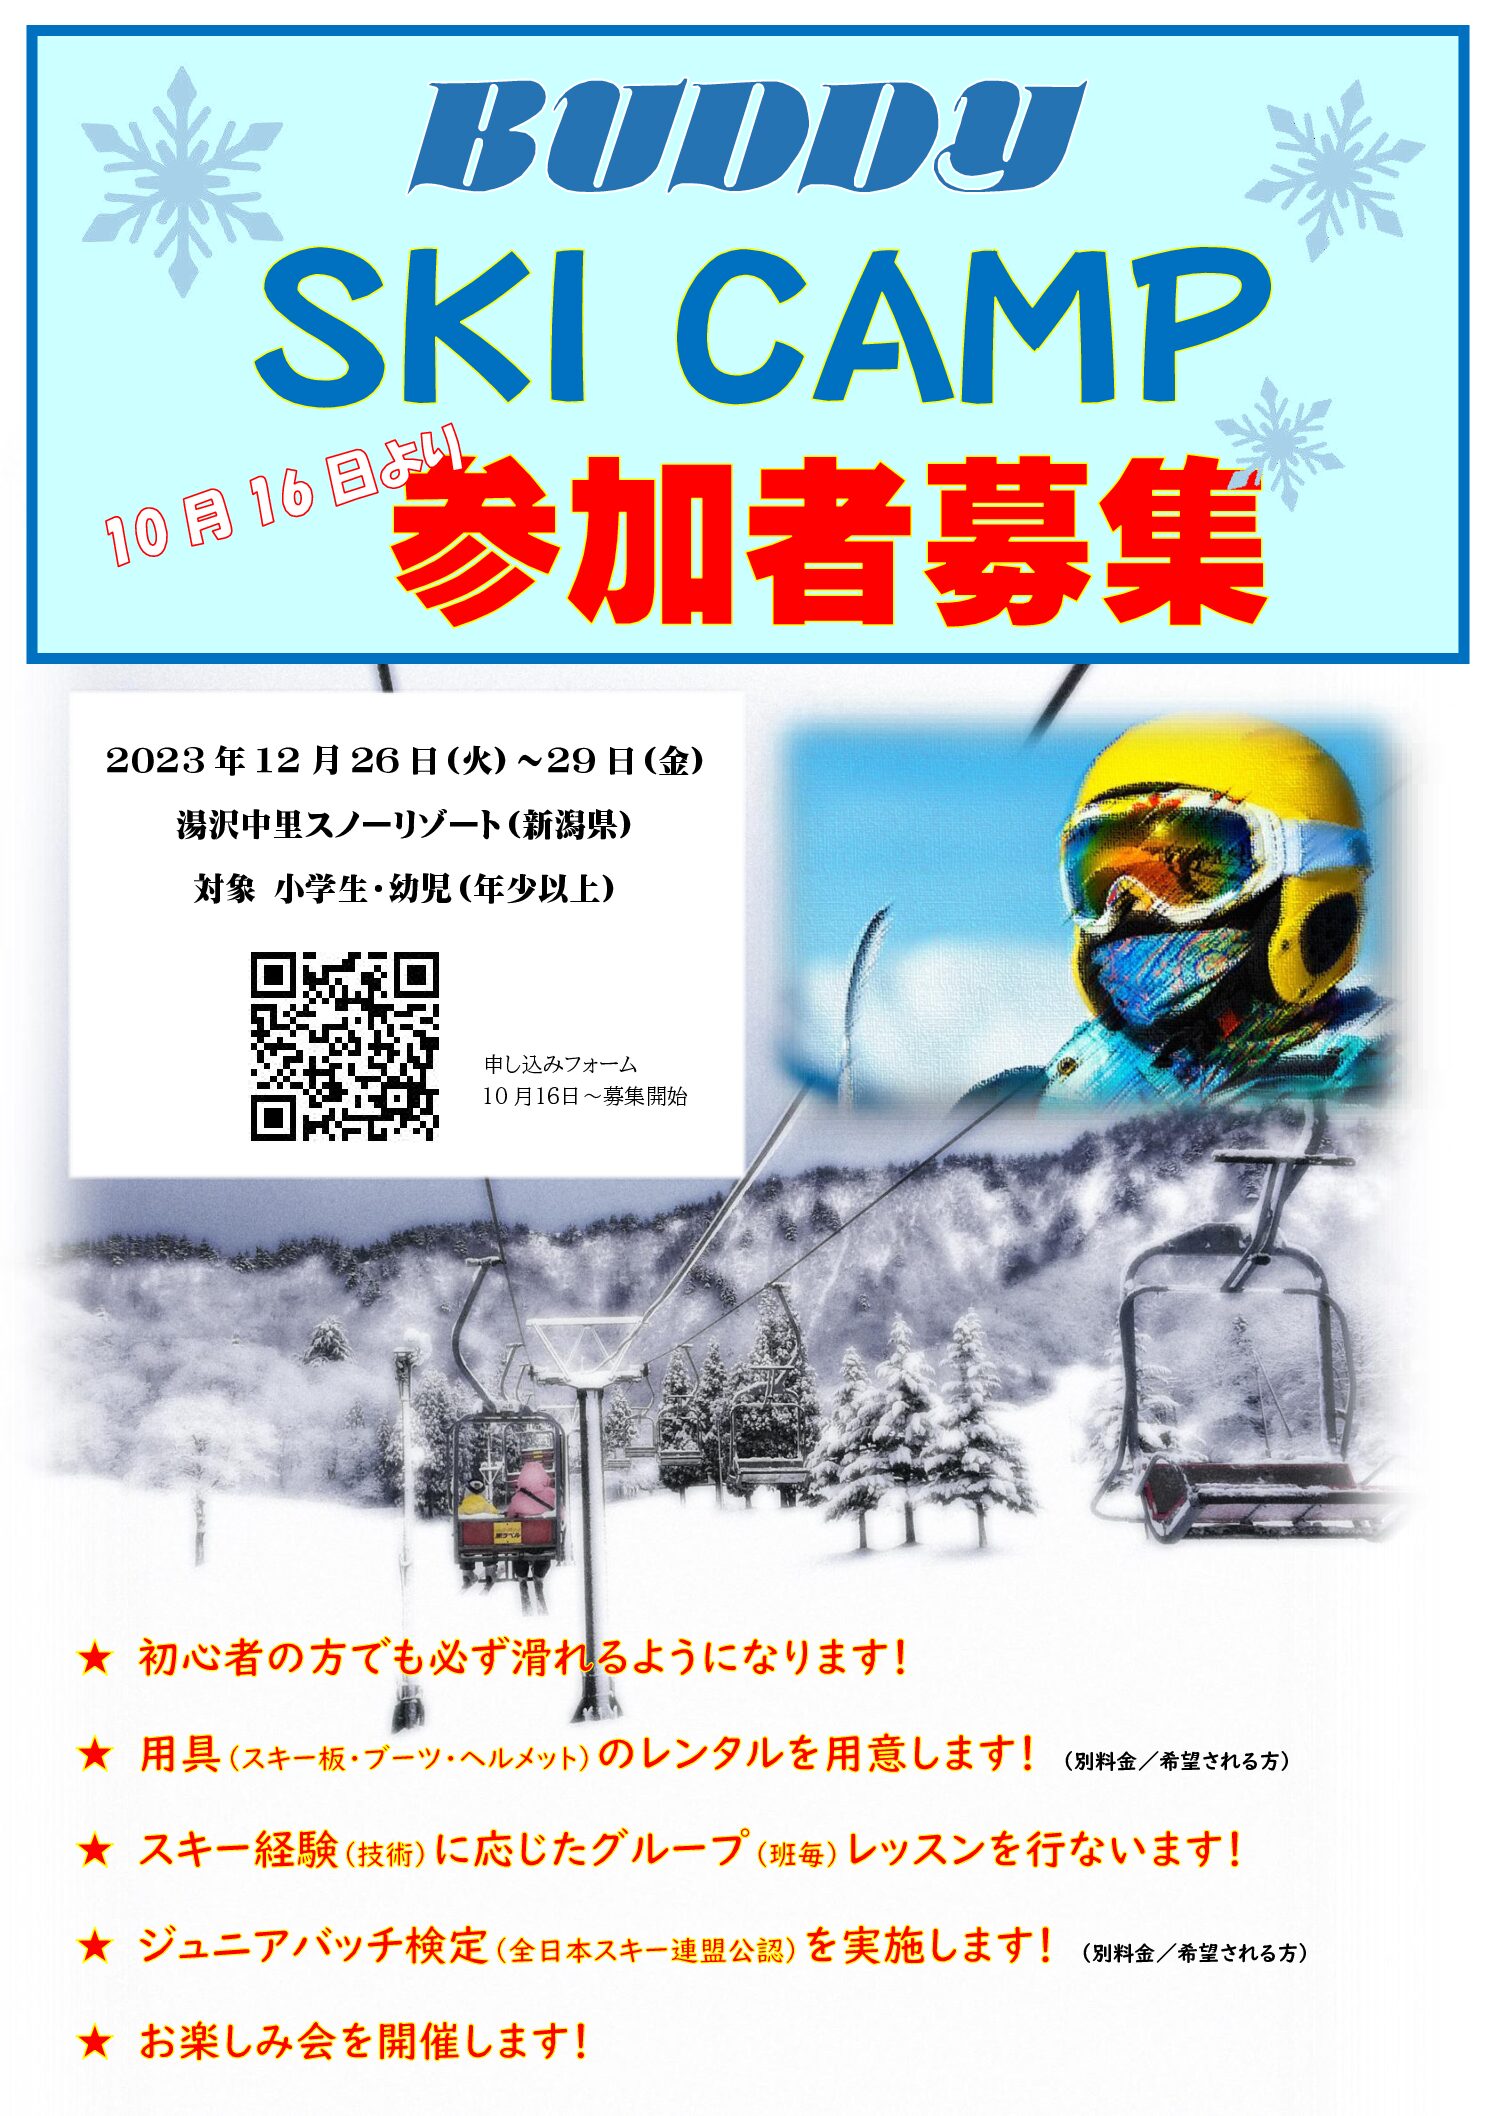 【バディツーリスト／募集開始】小学生・幼児 スキーキャンプ